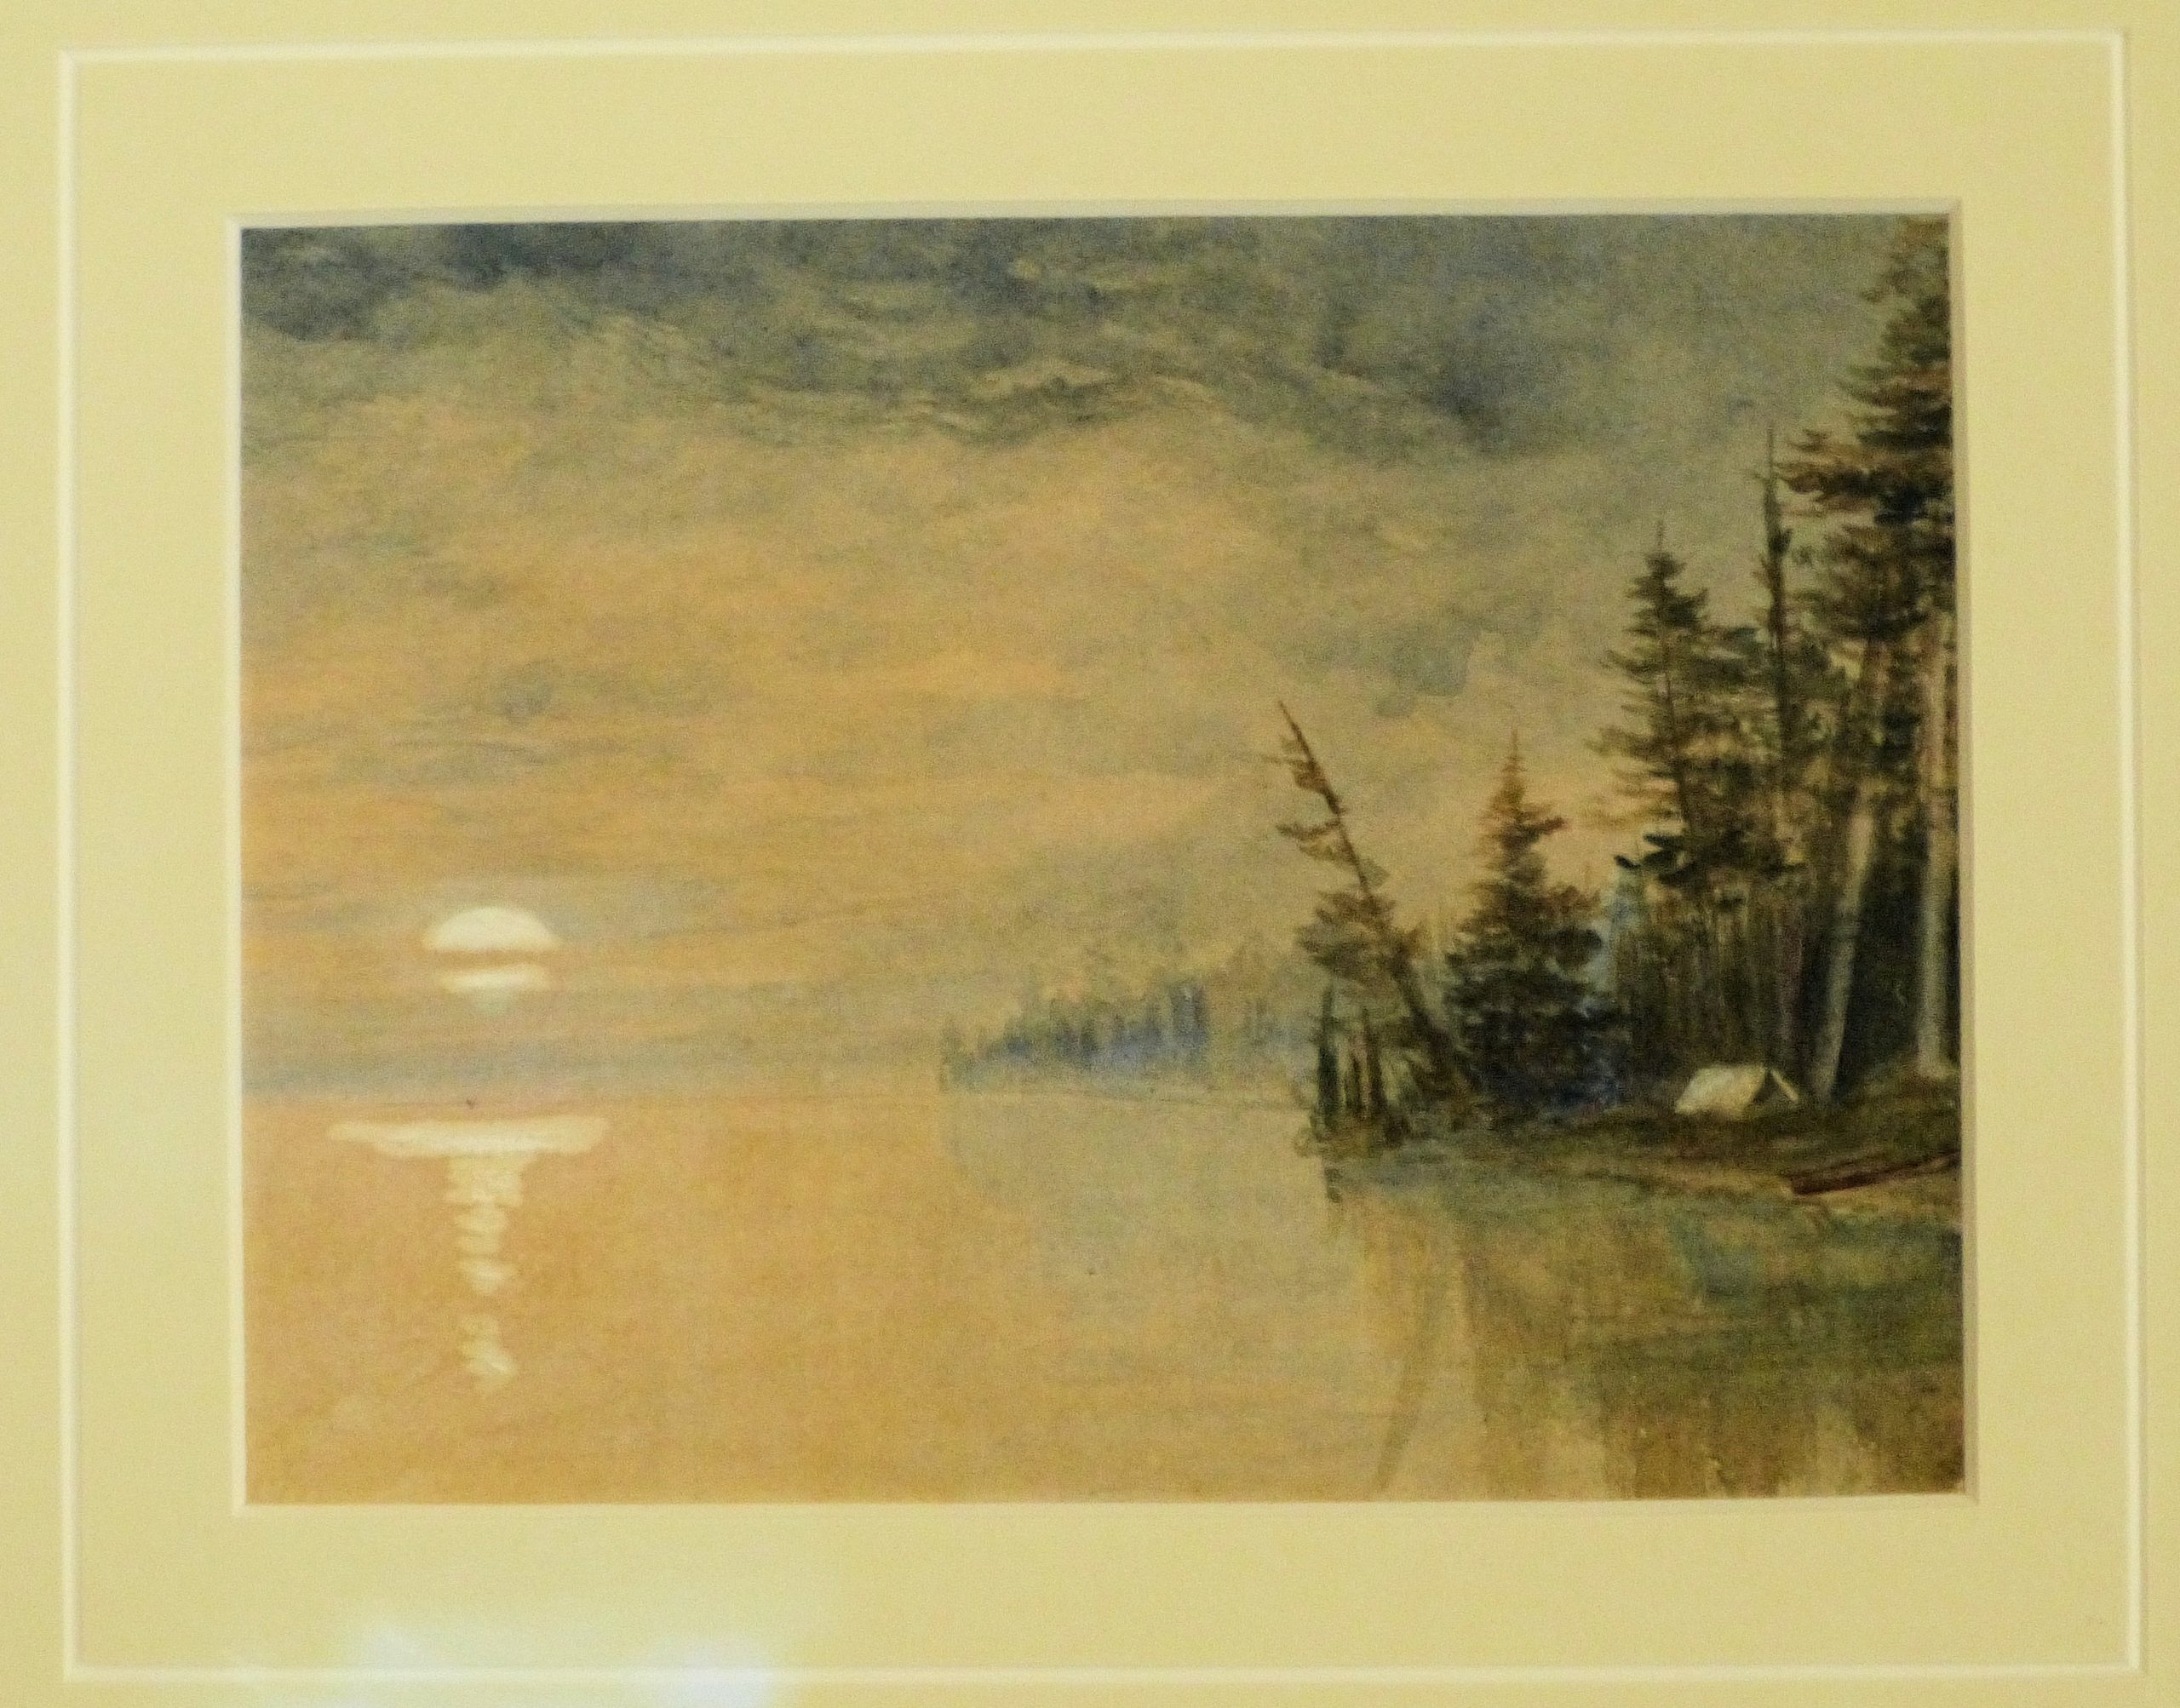 Bord du lac avec une tente sur la rive entourée par des arbres, la lune montante à l’horizon.